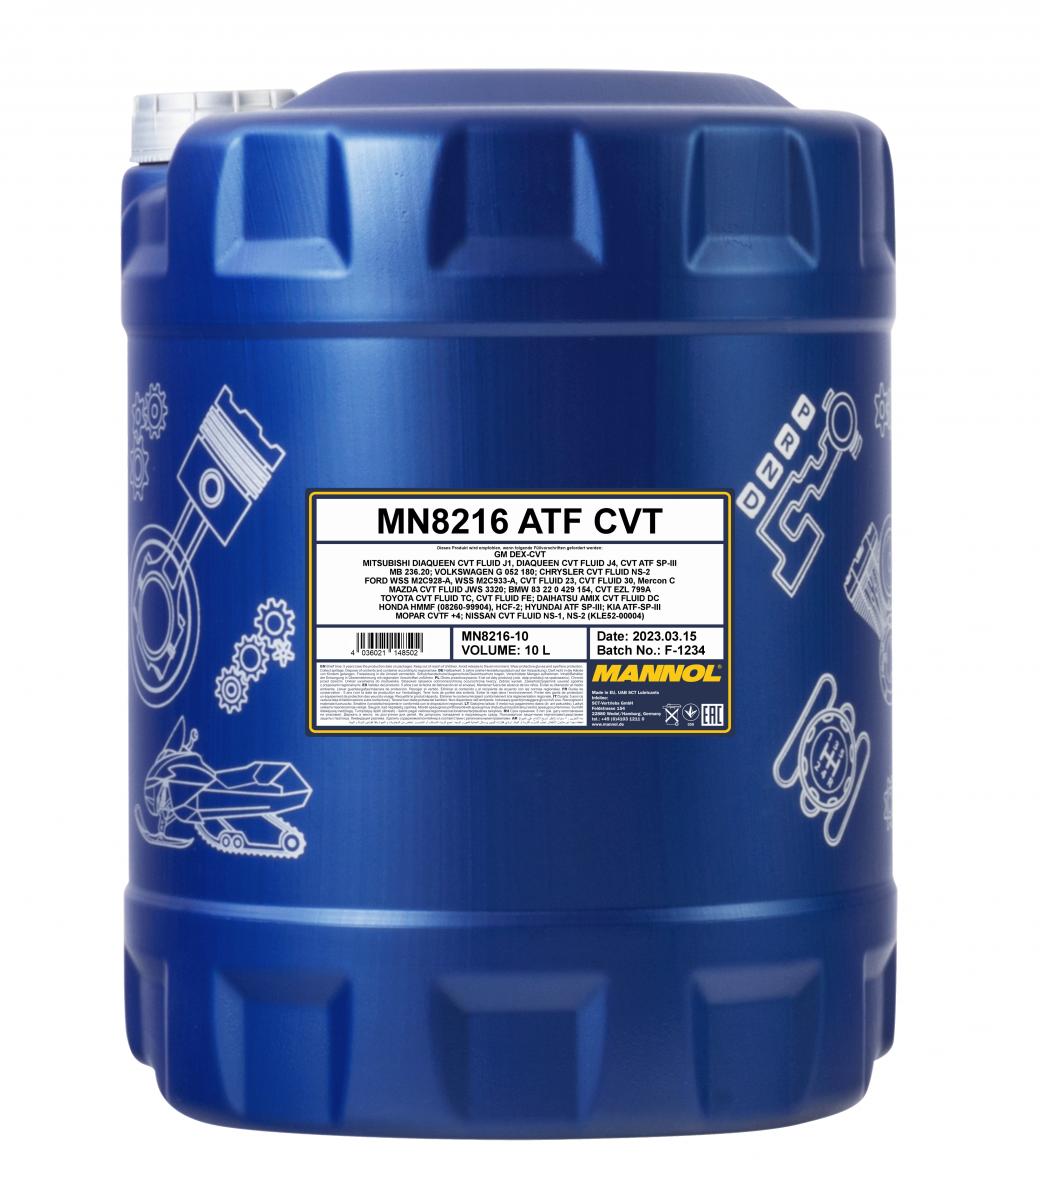 20 Liter (2x10) MANNOL ATF CVT MN8216-10 synthetisches Getriebeöl für CVT